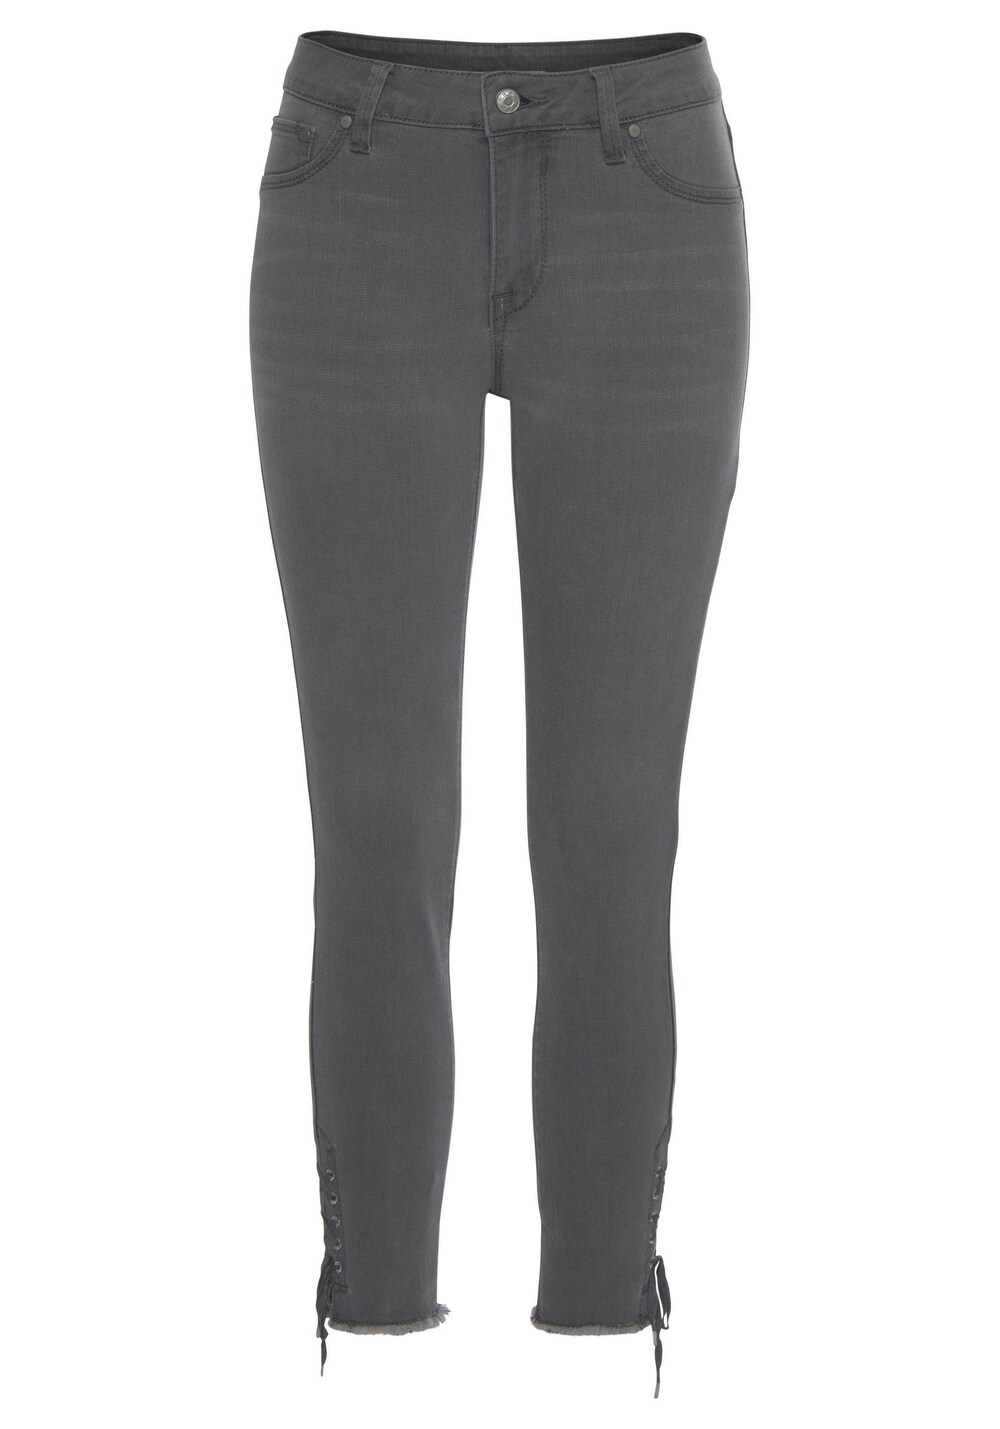 Узкие джинсы Lascana, серый узкие брюки lascana серый